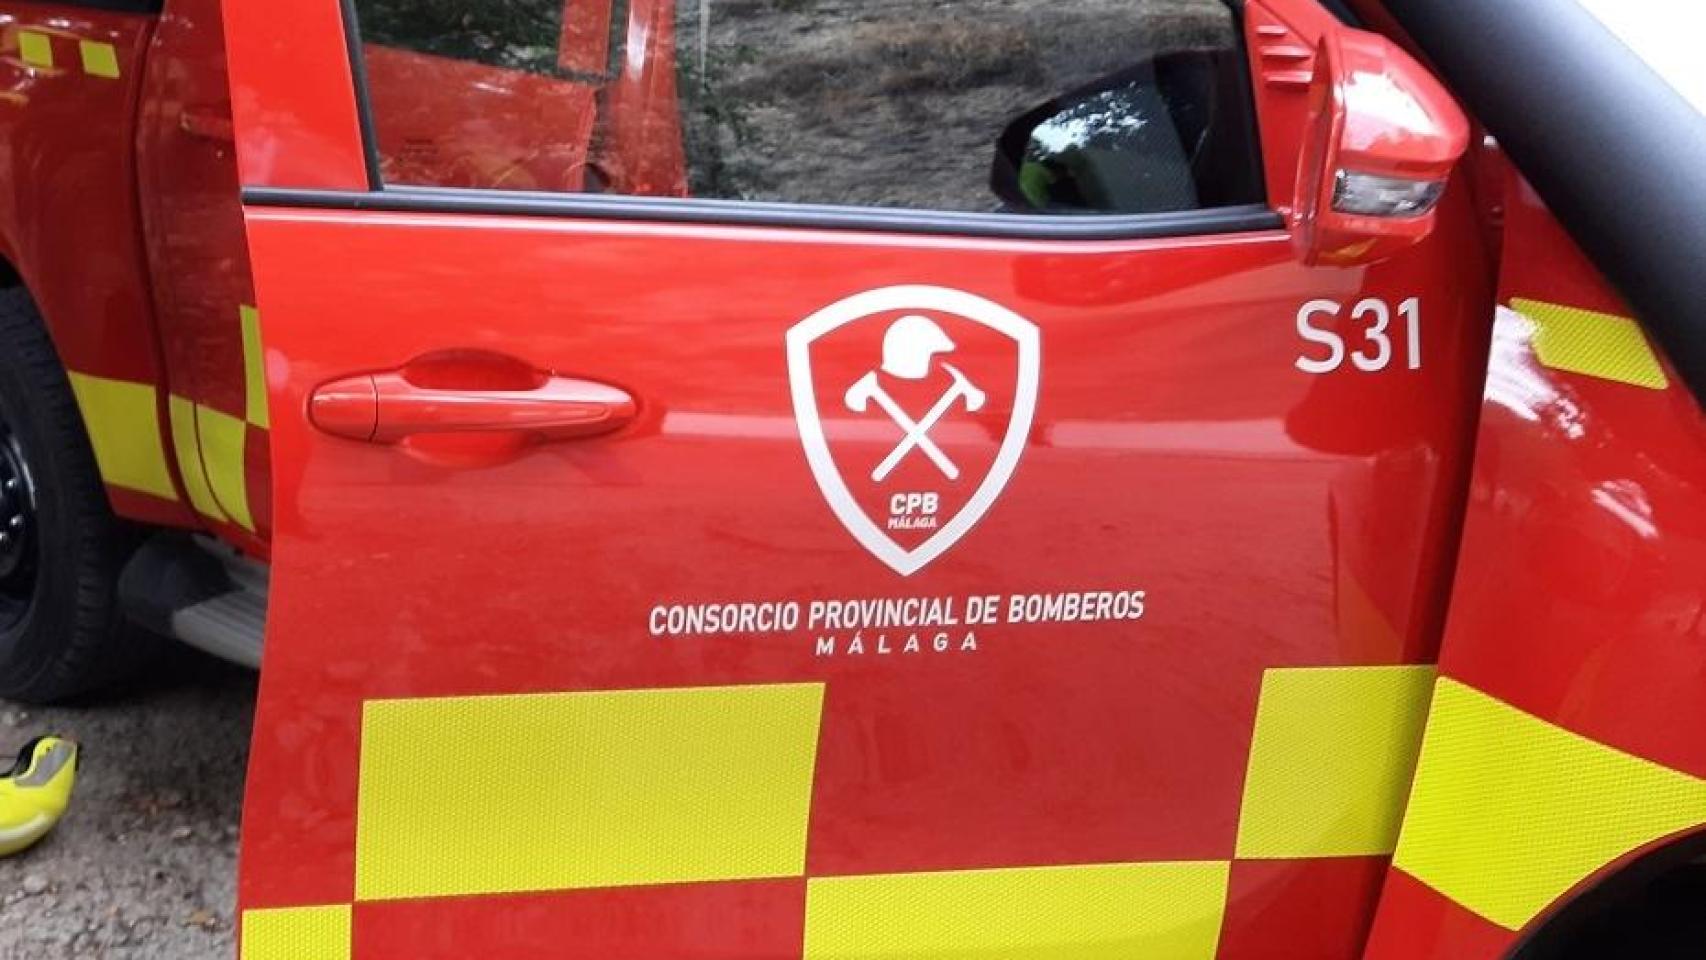 Imagen de un vehículo del Consorcio de Bomberos de la Provincia de Málaga.